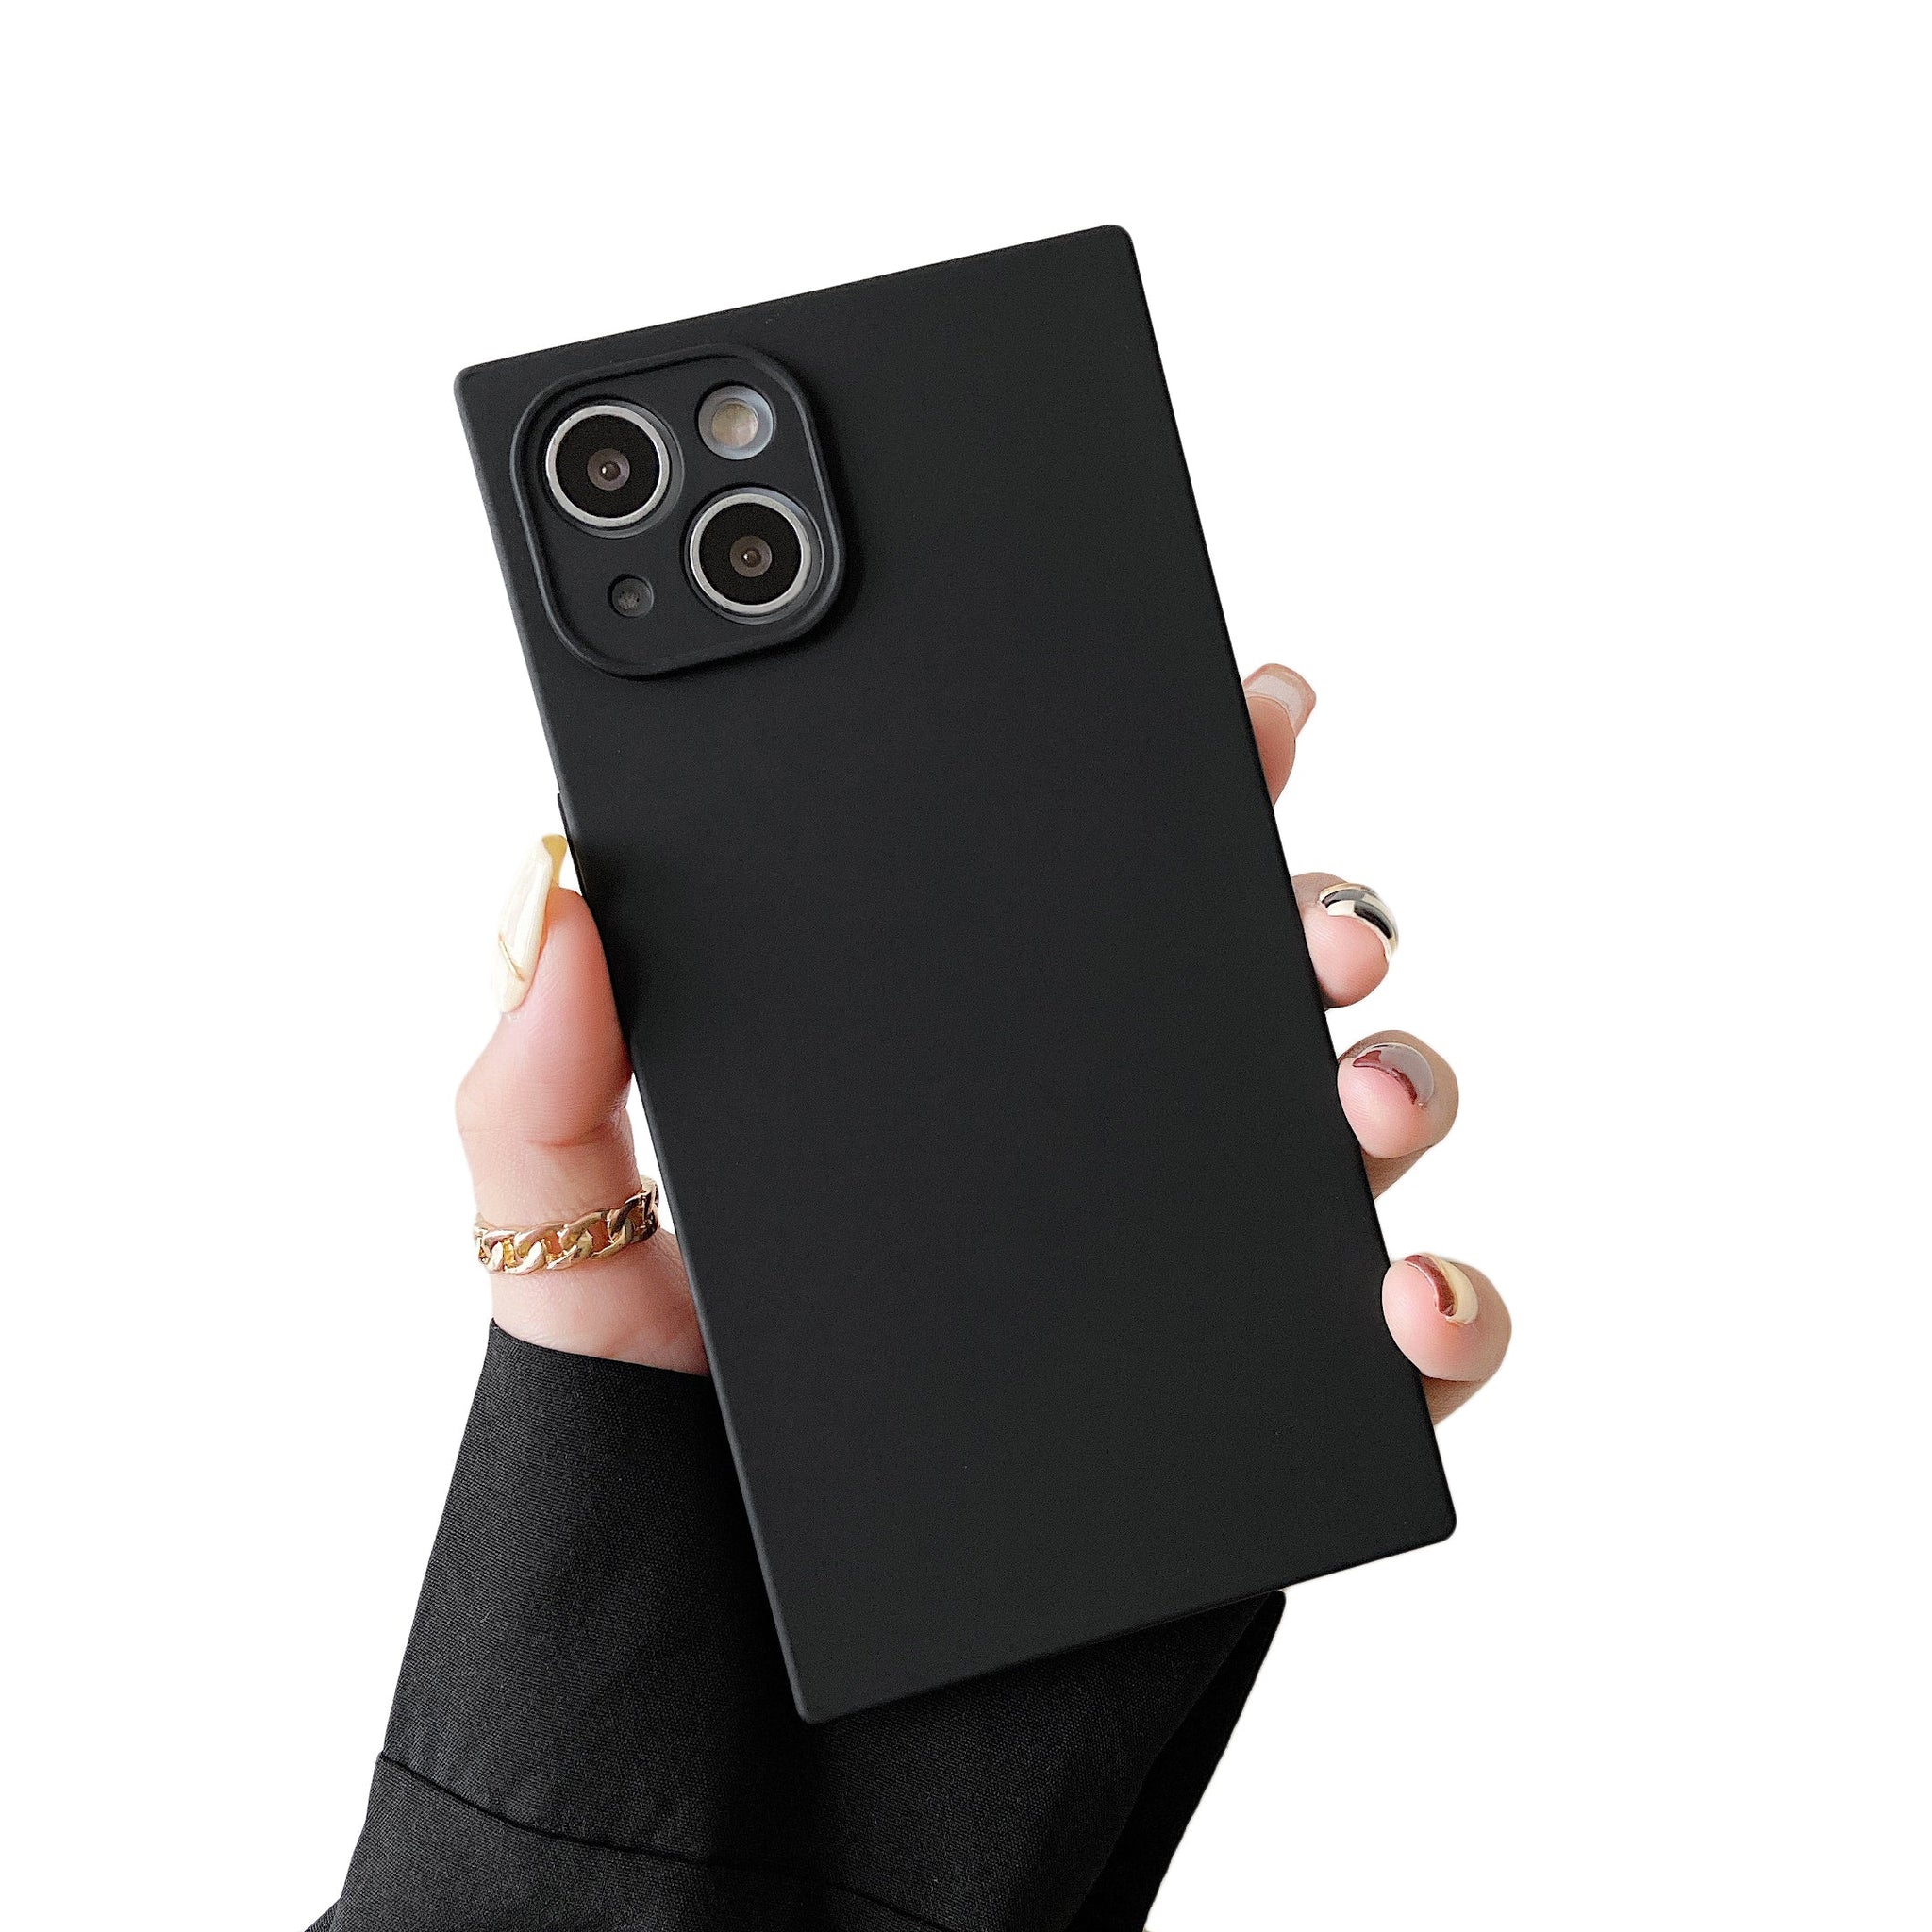 iPhone 11 Pro Max Case Square Silicone Camera Protector (Black)